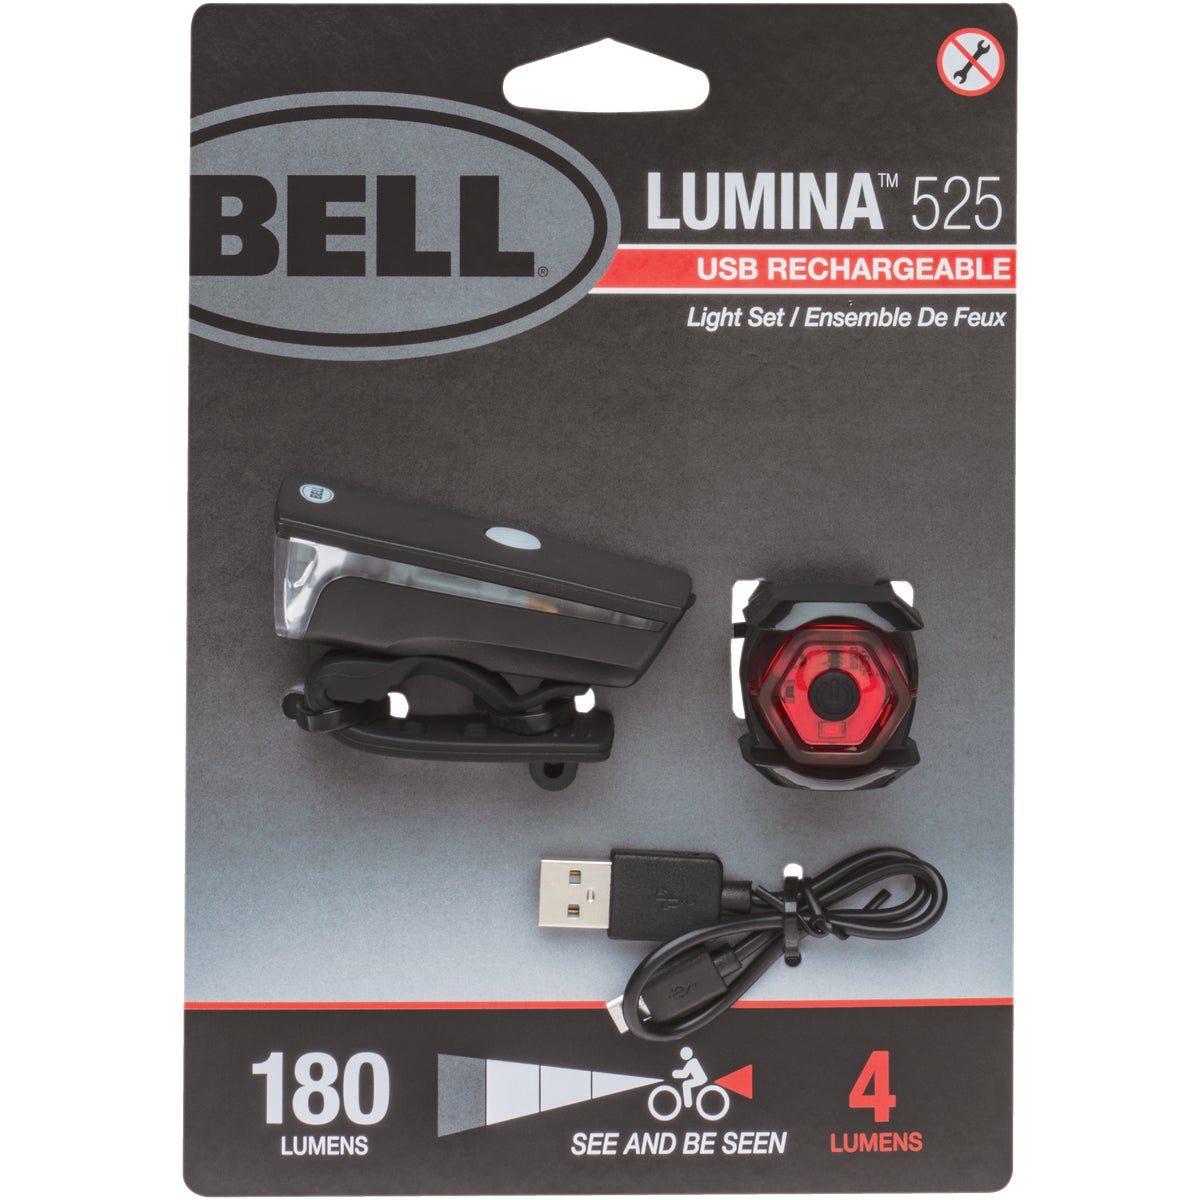 Bell Lumina 525 LED Bicycle Light Set